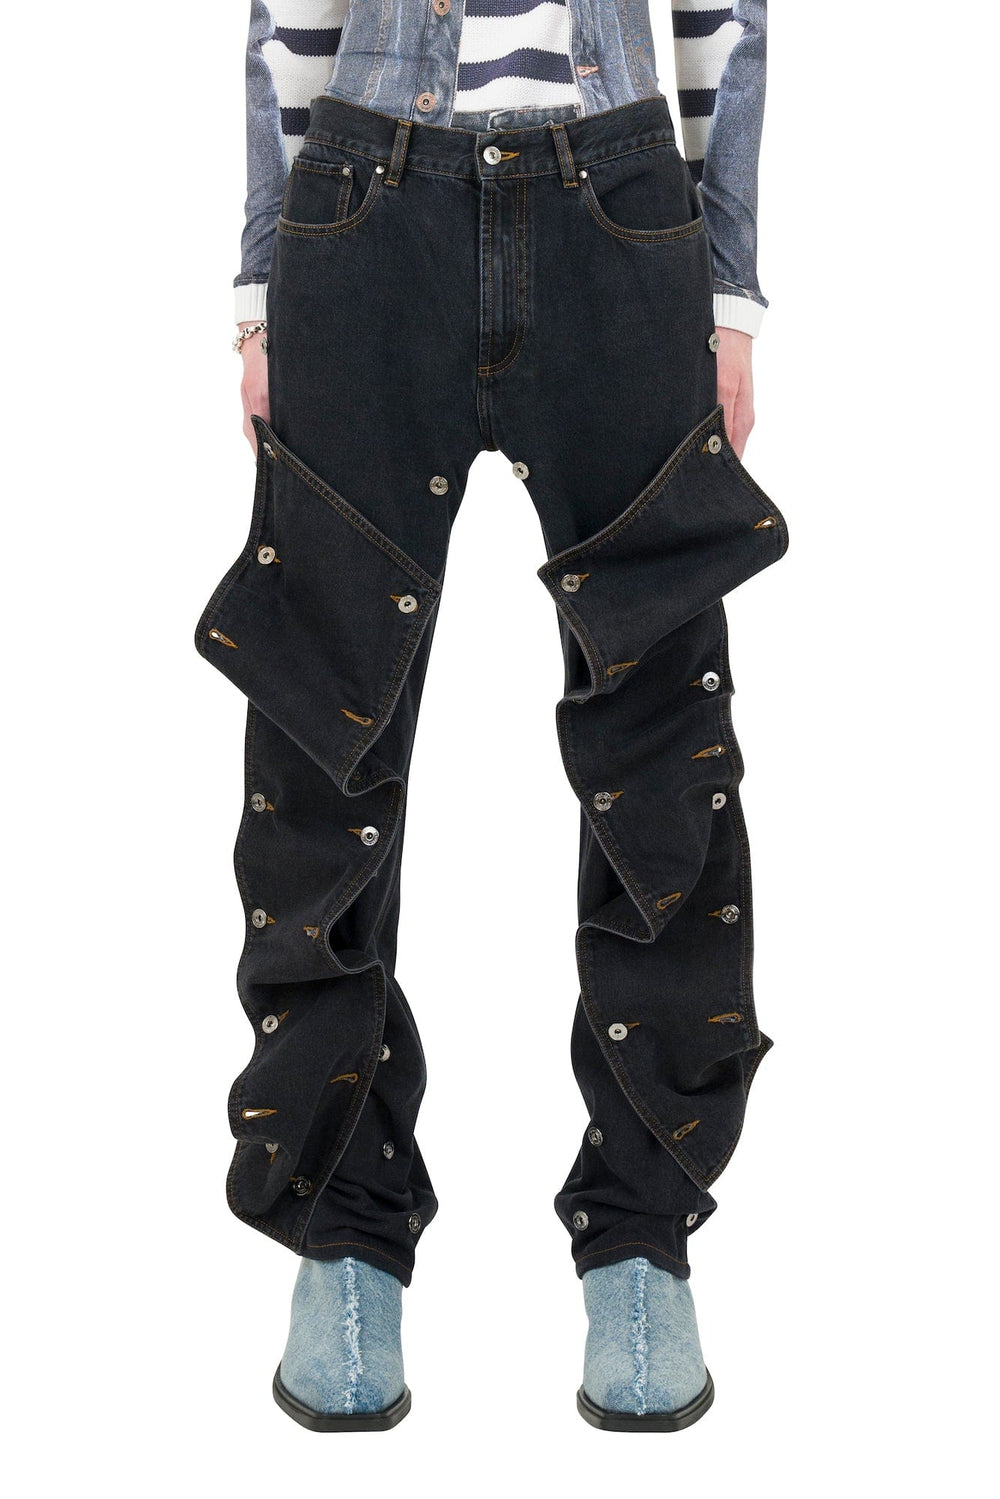 希望価格お気軽にご相談くださいYproject classic button pannel jeans デニム